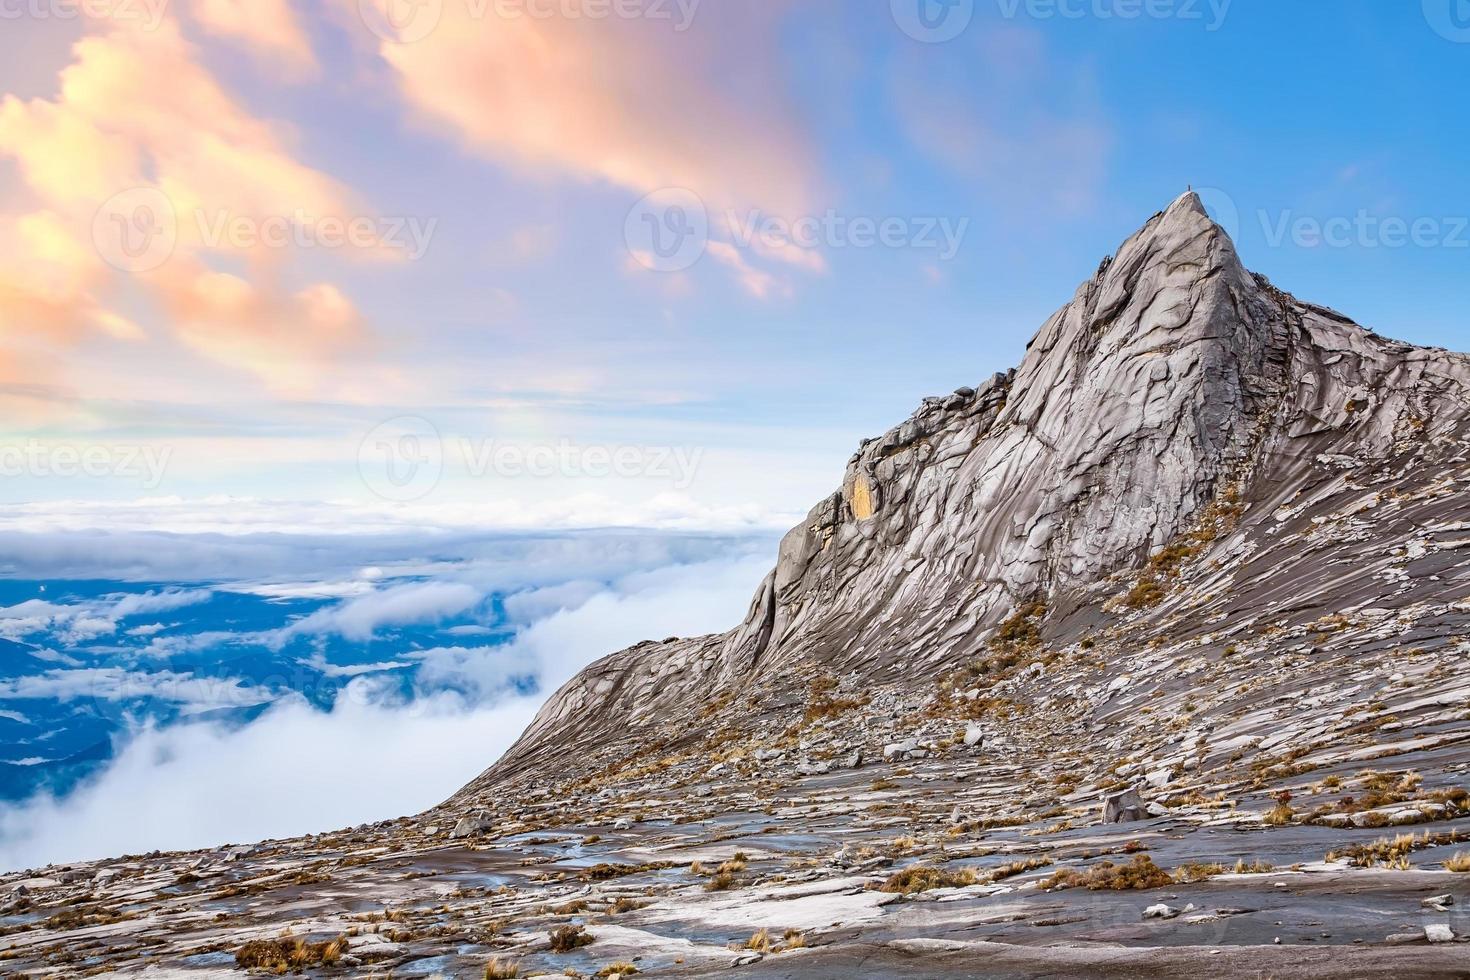 natuurlandschap op de top van de berg kinabalu in maleisië foto